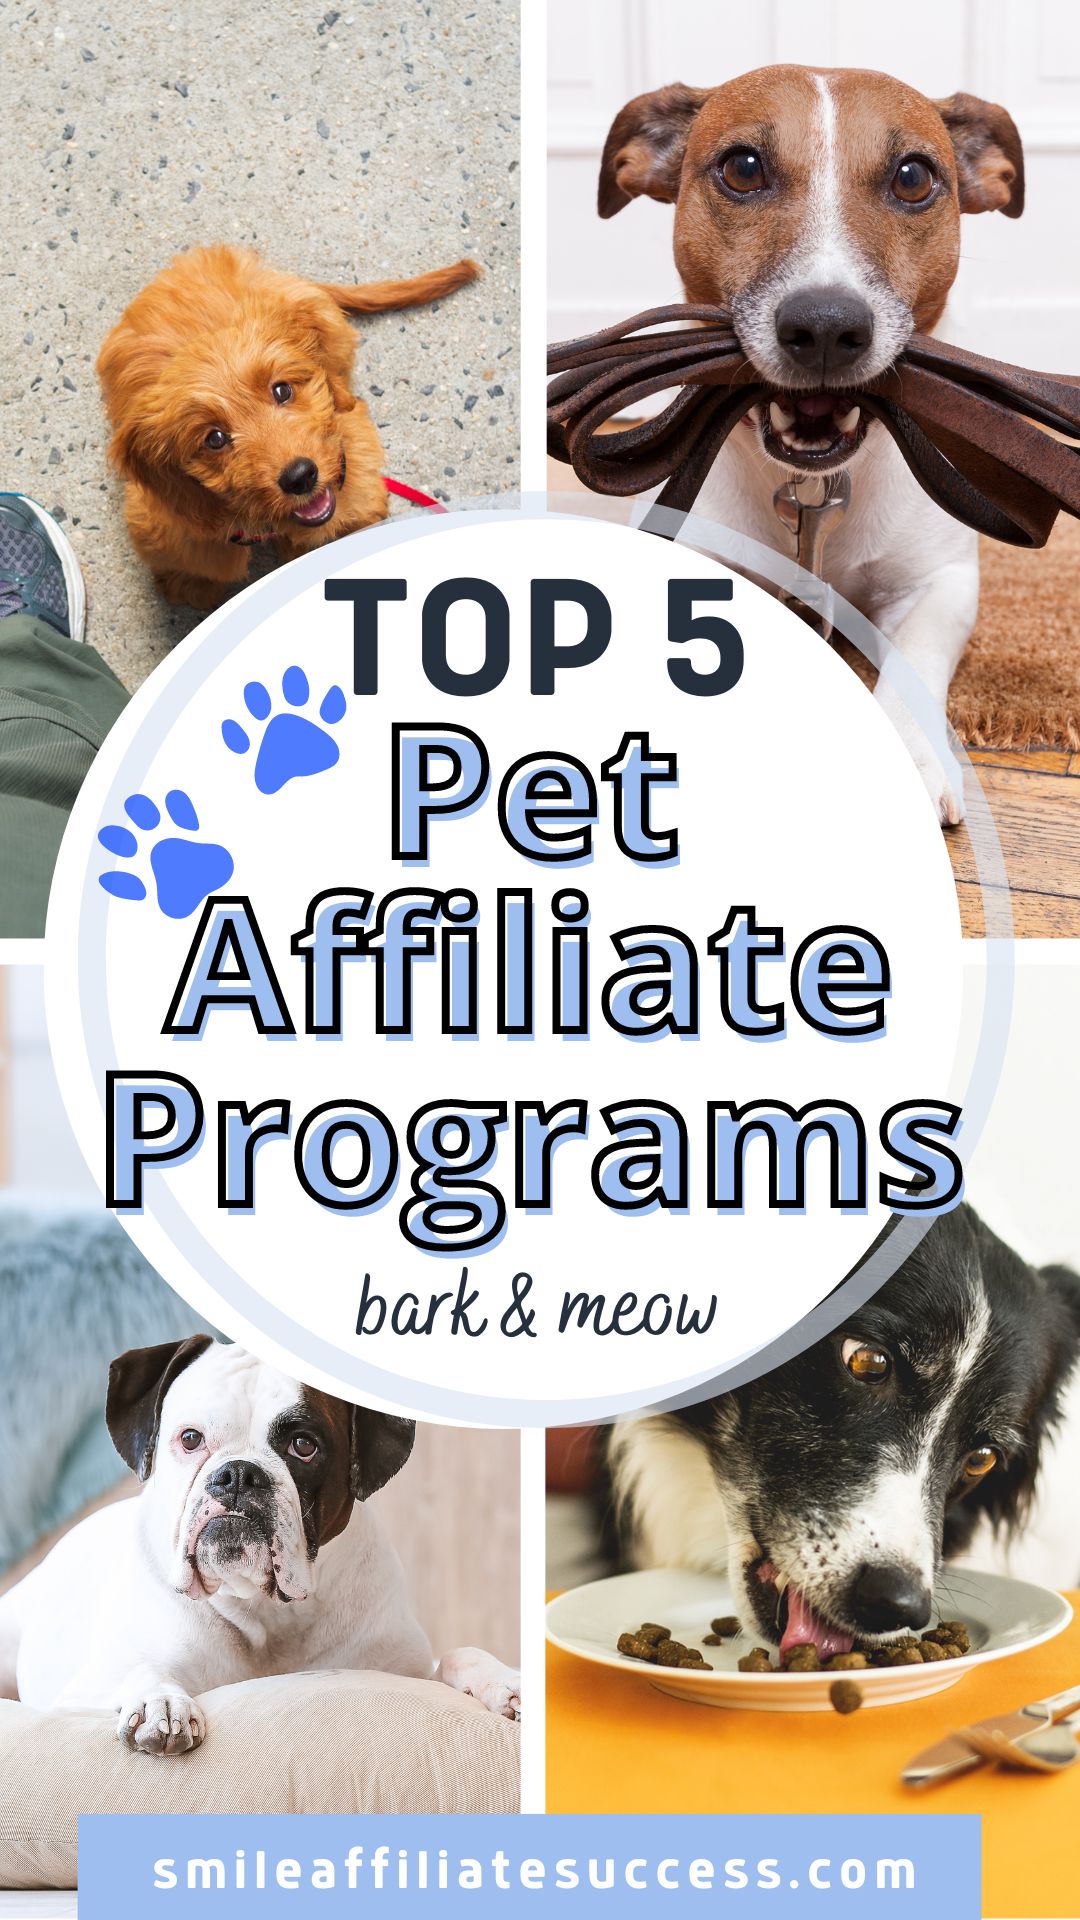 Top 6 Pet Affiliate Programs